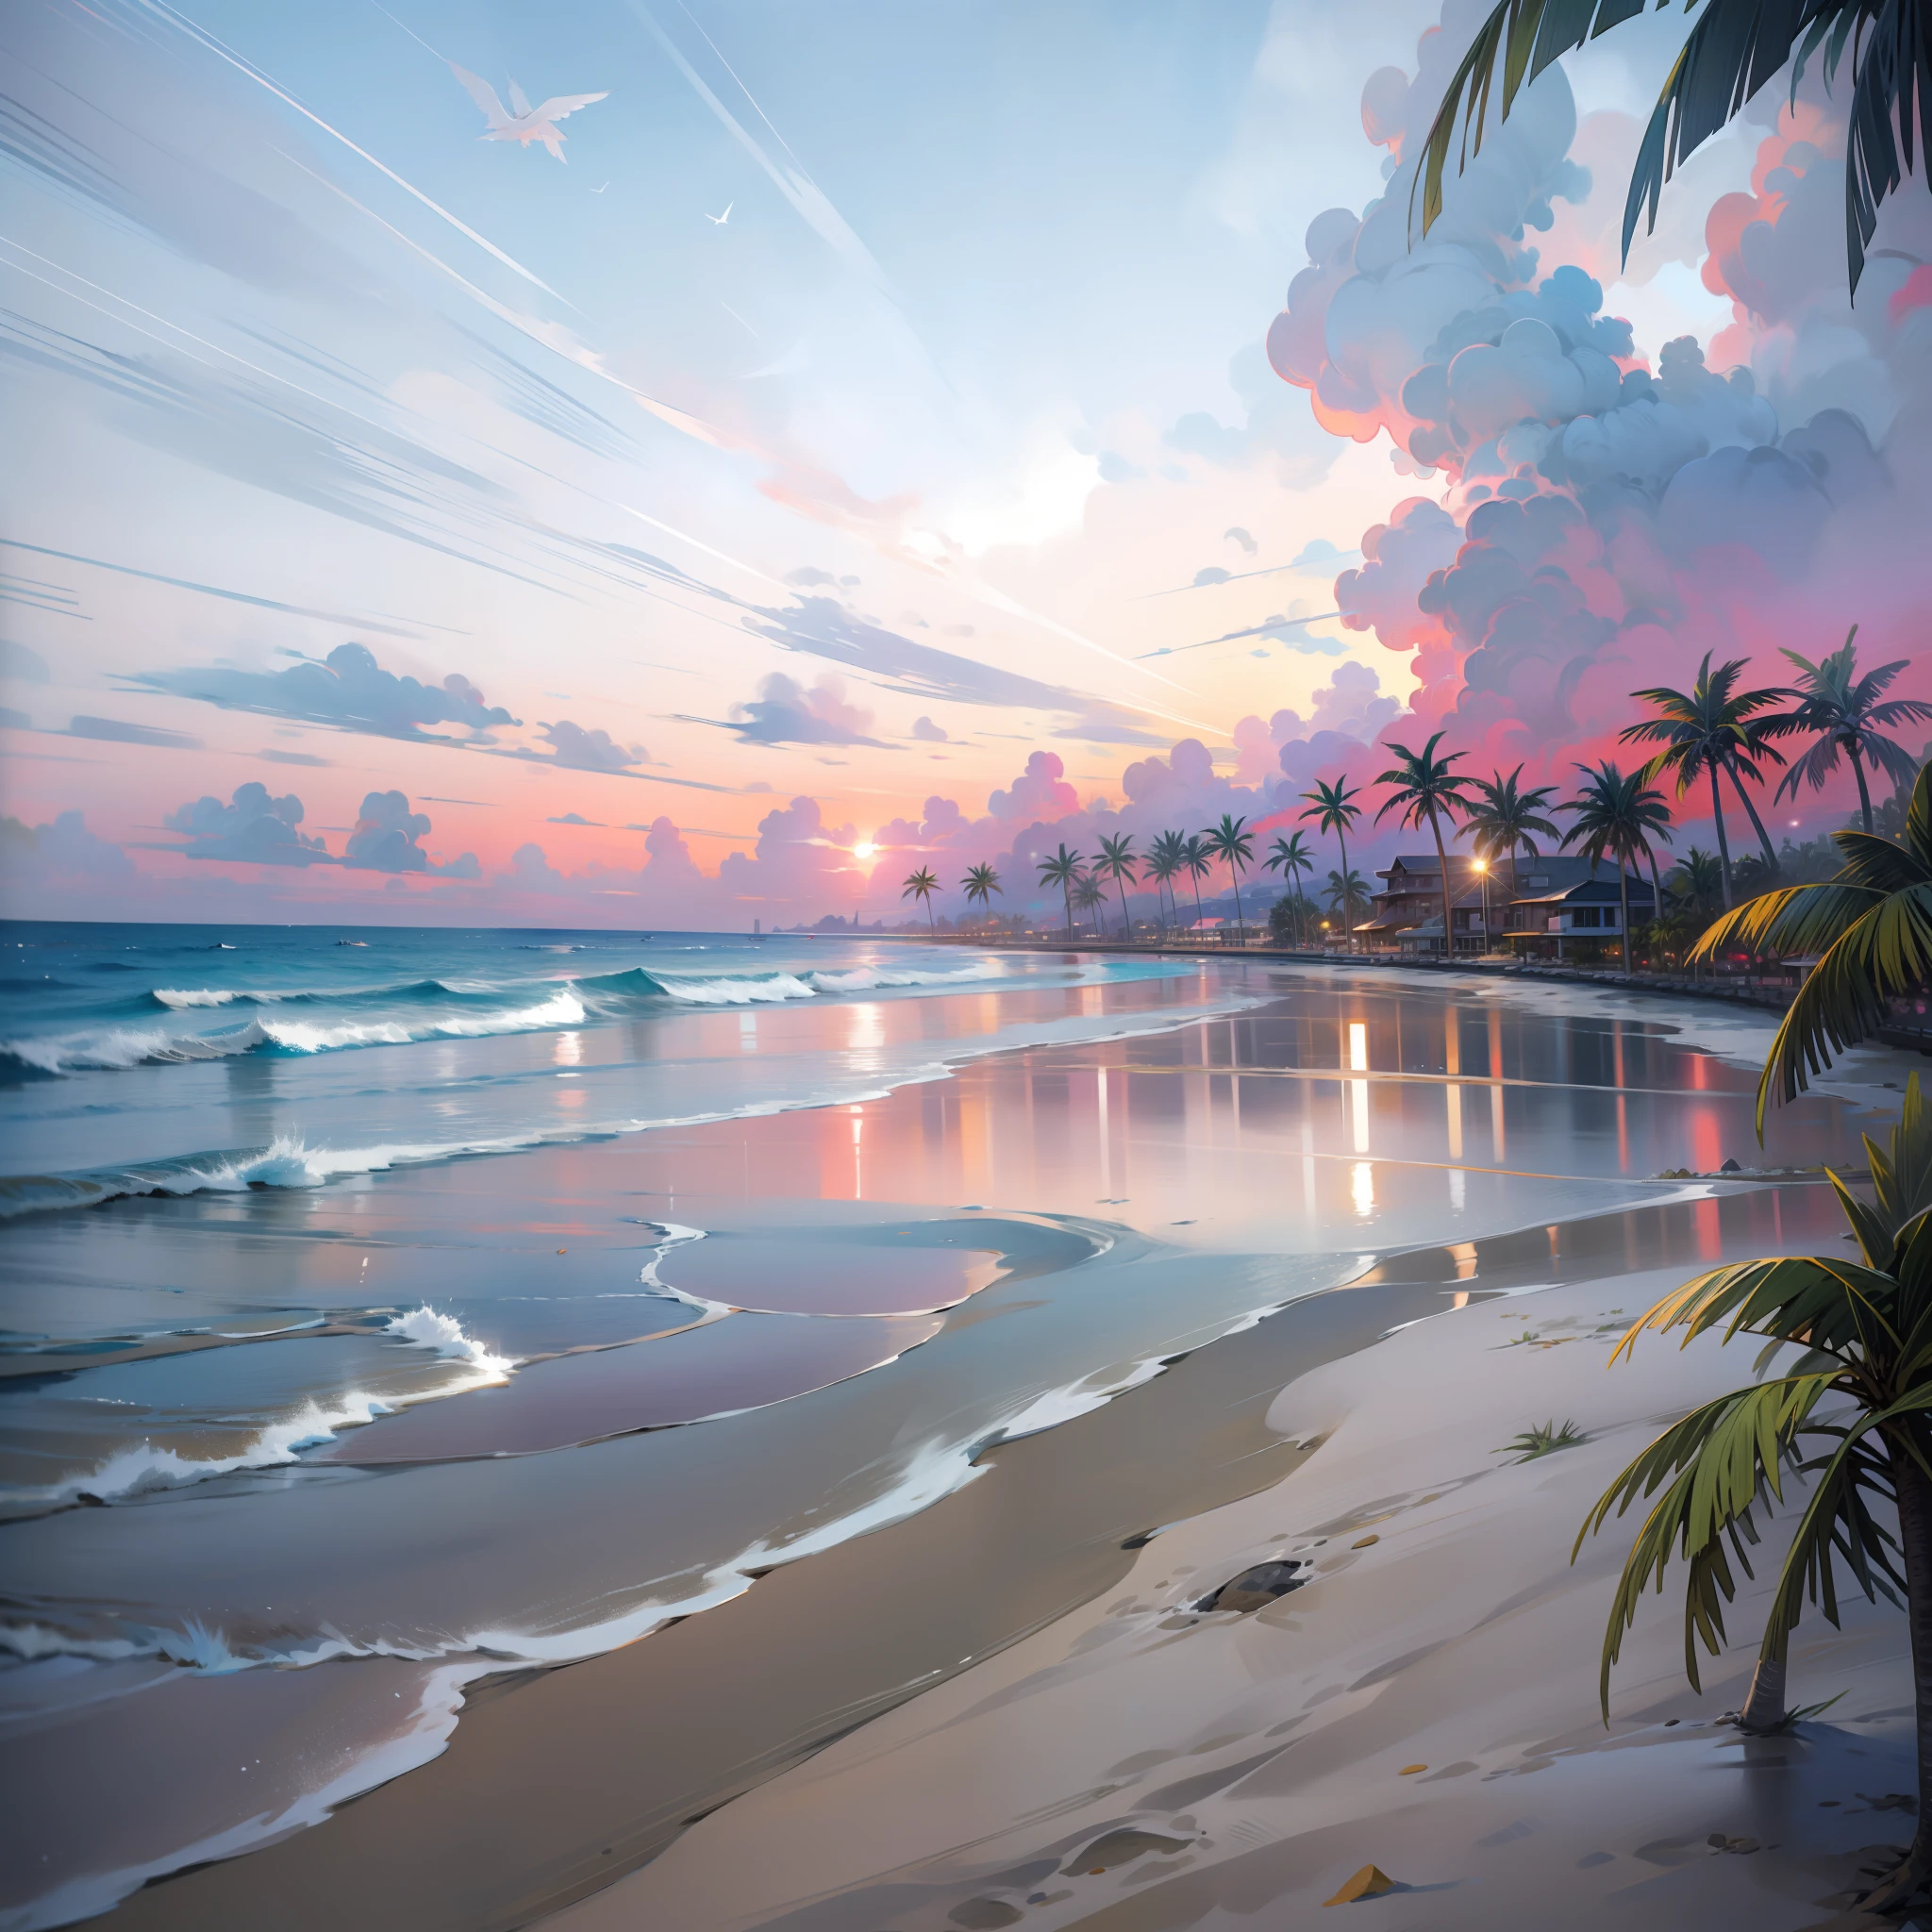 オレンジと赤が混ざったビーチの魅惑的な夕日, 空にはピンクと黄色. 水は透き通っています, 優しく岸辺にキス, 白い砂浜が見渡す限り広がっています. このシーンはダイナミックで息を呑むほど美しい, カモメが空高く舞い上がり、ヤシの木が優しく揺れる. 穏やかな雰囲気に浸り、静けさに包まれてください.